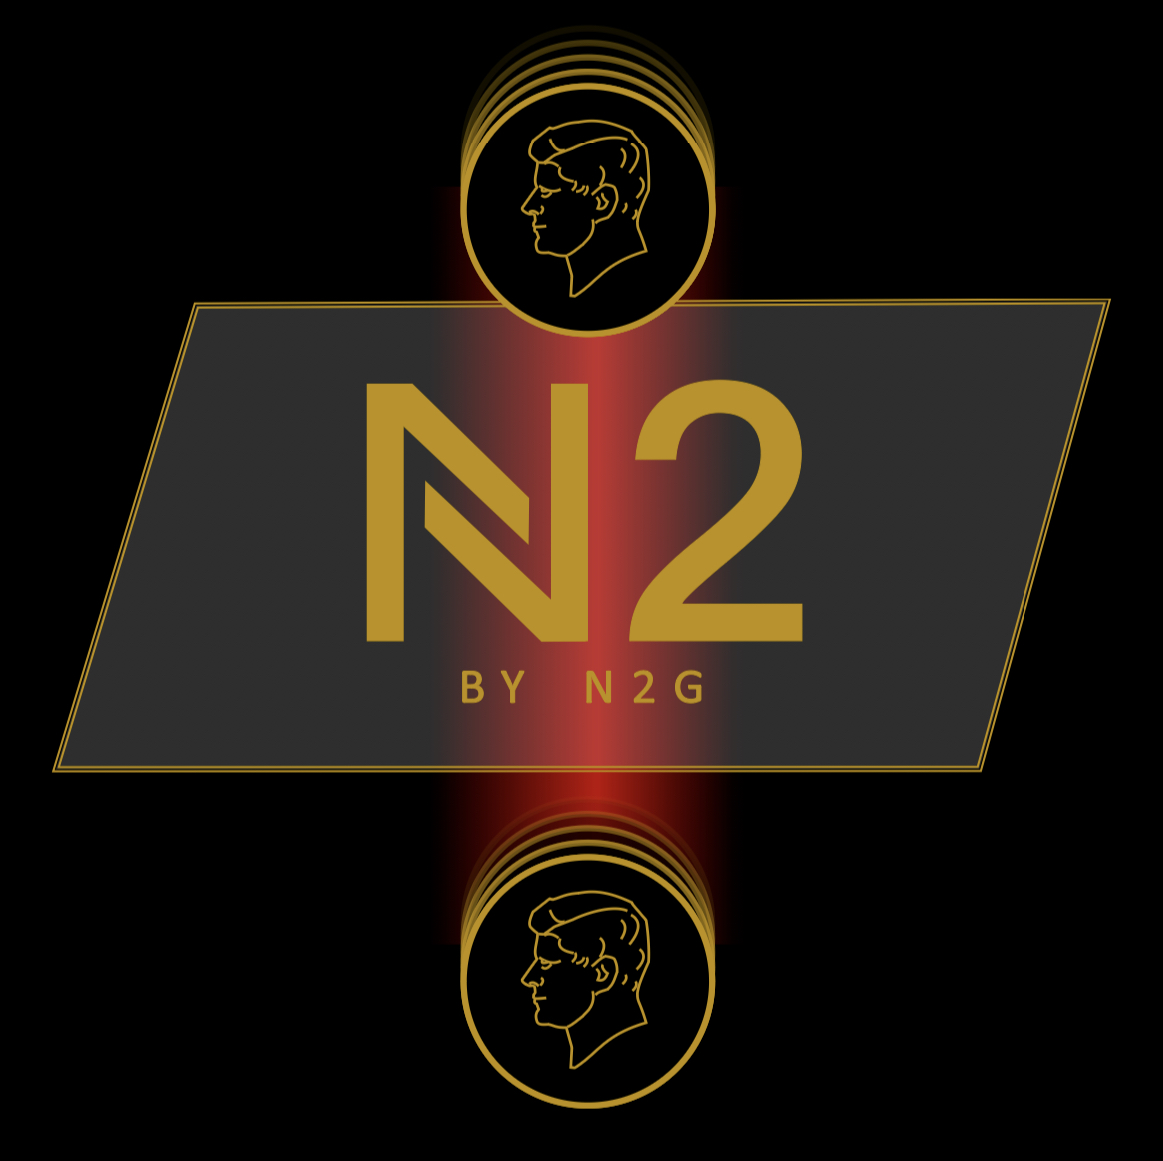 N2 By N2G